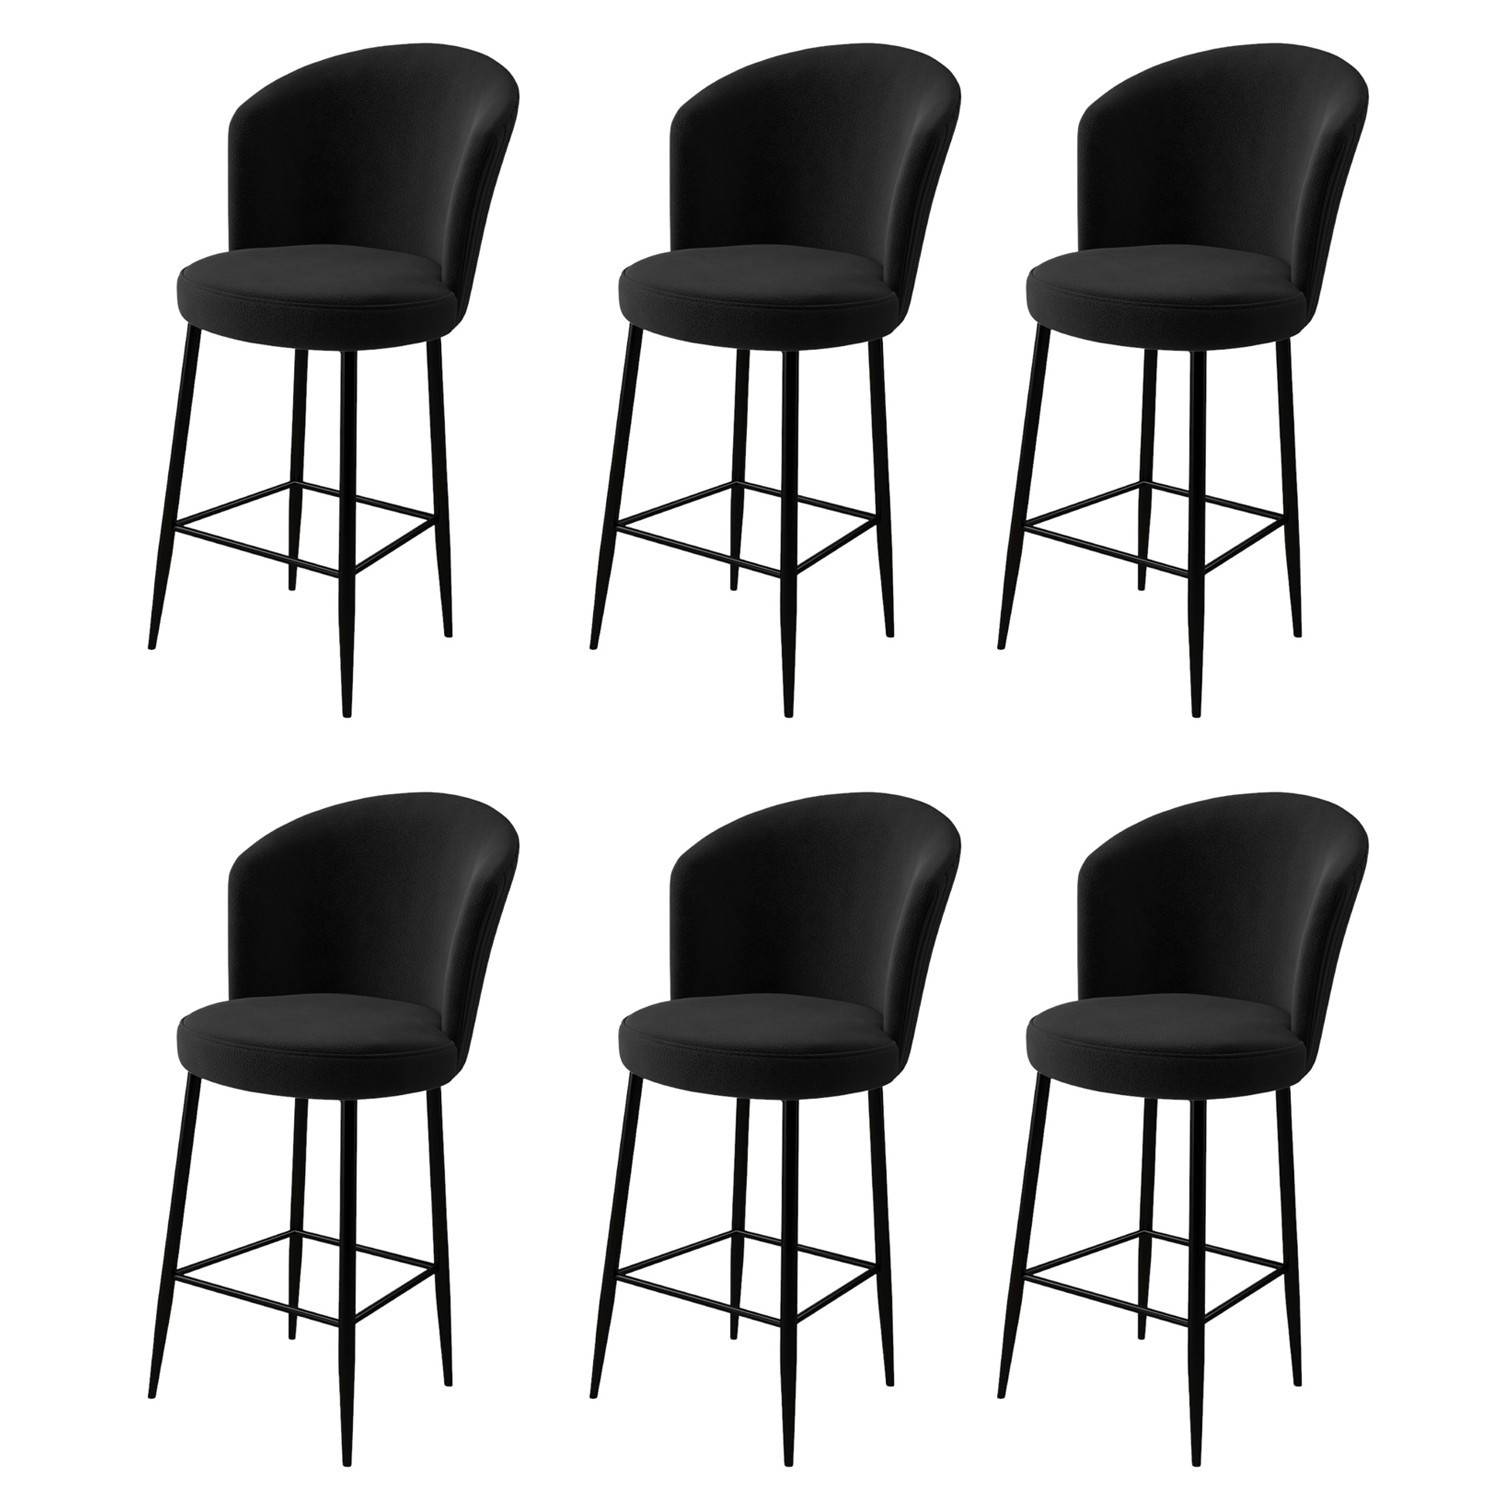 Lote de 6 sillas de bar Valatio de terciopelo negro y metal